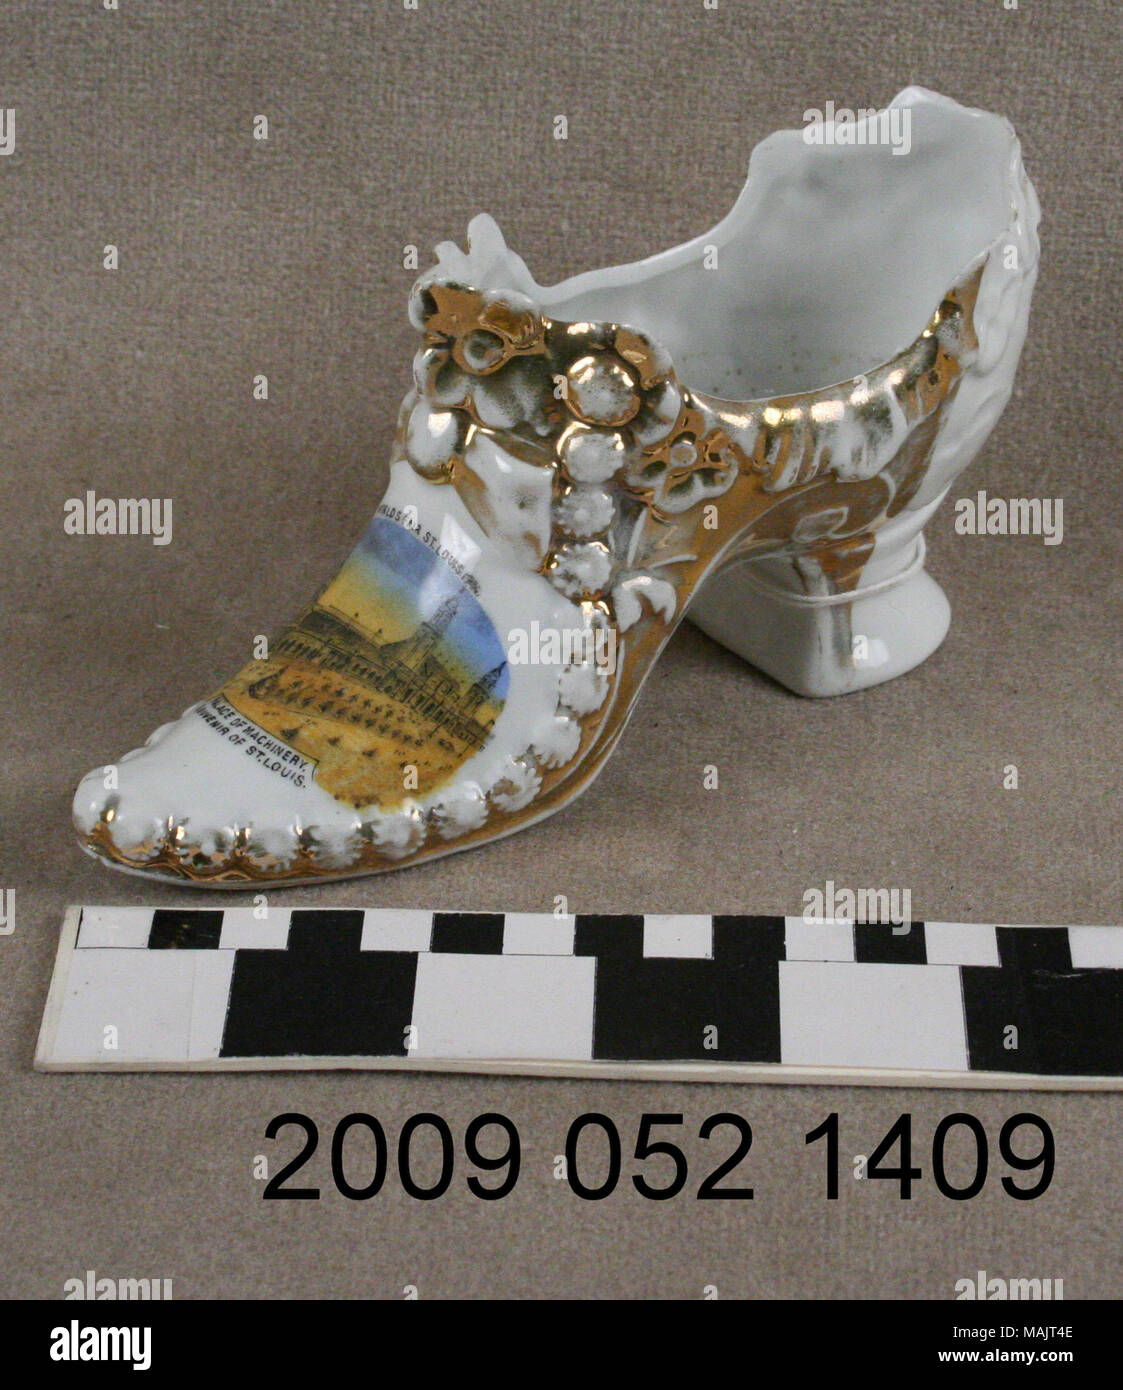 Cerámicos blancos grandes damas de tacón alto con color dorado y la transferencia del Palacio de maquinaria desde el año 1904 la Feria Mundial de Cerámica Blanca Título: Zapato de mujer